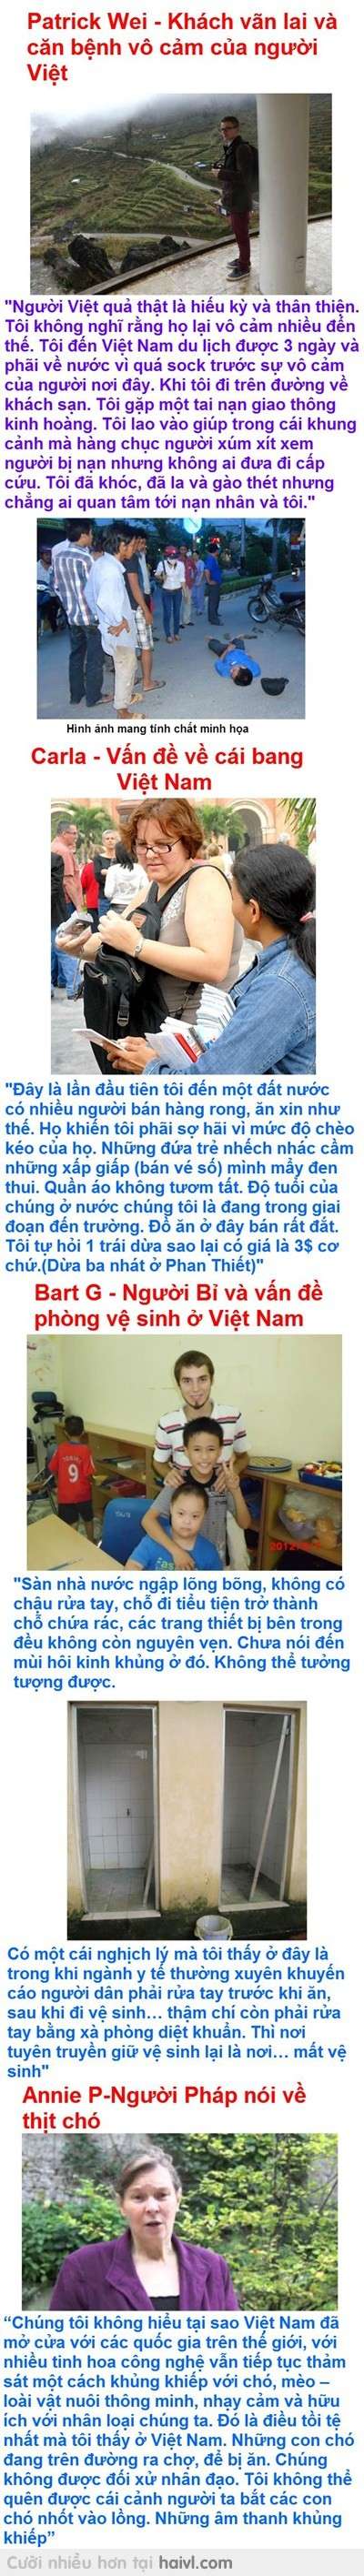 Đọc đễ biết người nước ngoài suy nghĩ gì về người Việt Nam 1330